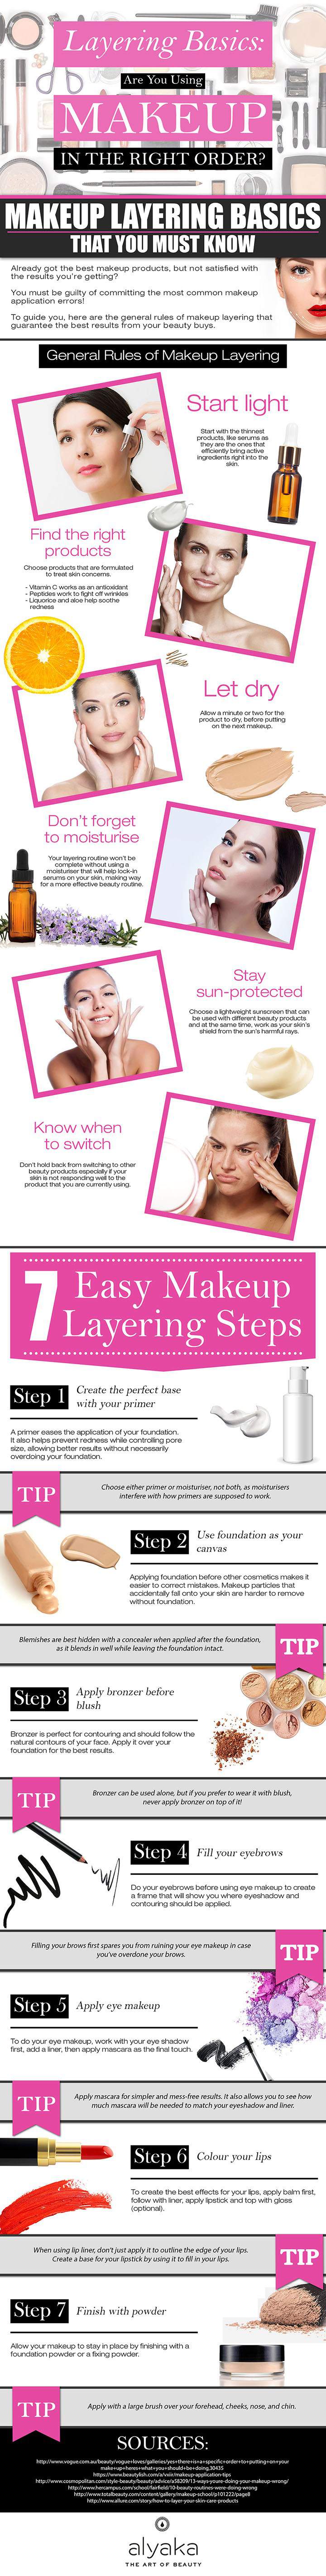 Makeup Layering Basics - Infographic Portal